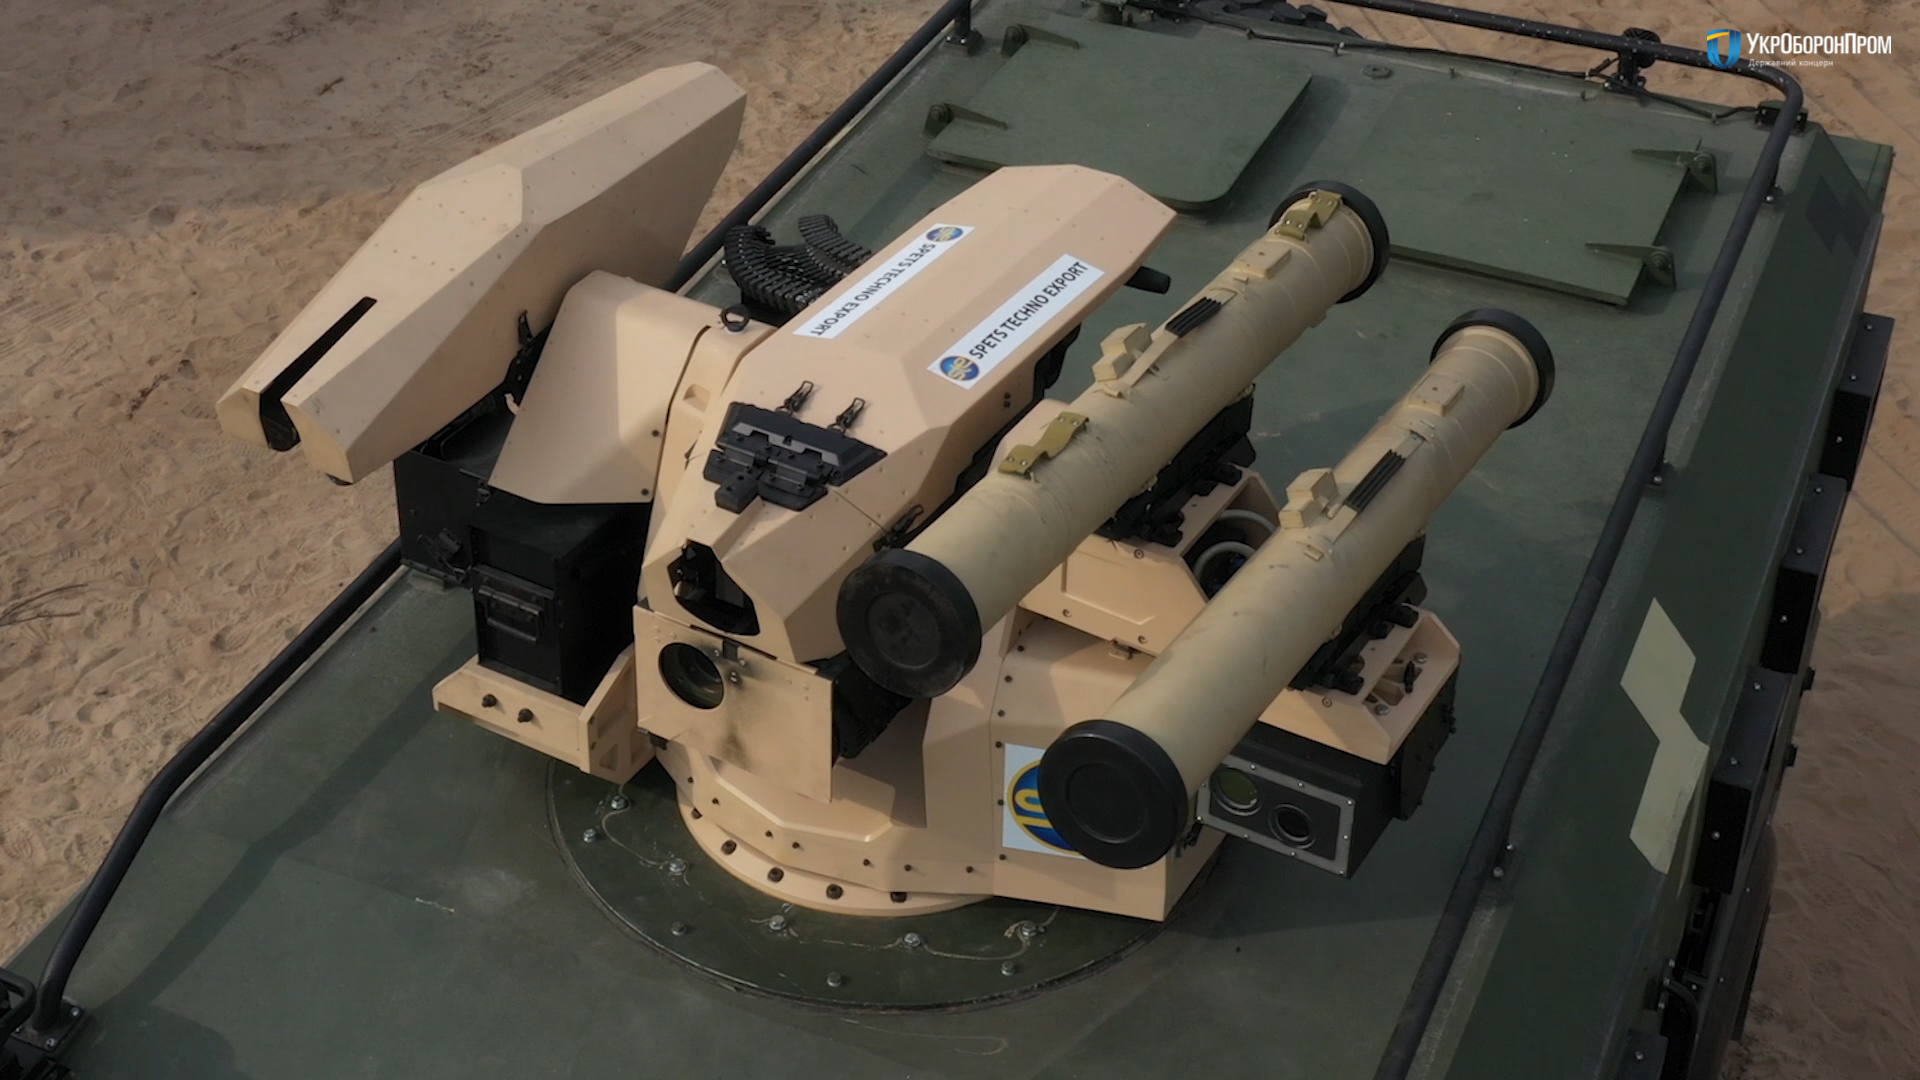 Le forze armate dell'Ucraina utilizzano veicoli corazzati con un modulo di combattimento SERDAR, è equipaggiato con il complesso anticarro Skif e due mitragliatrici